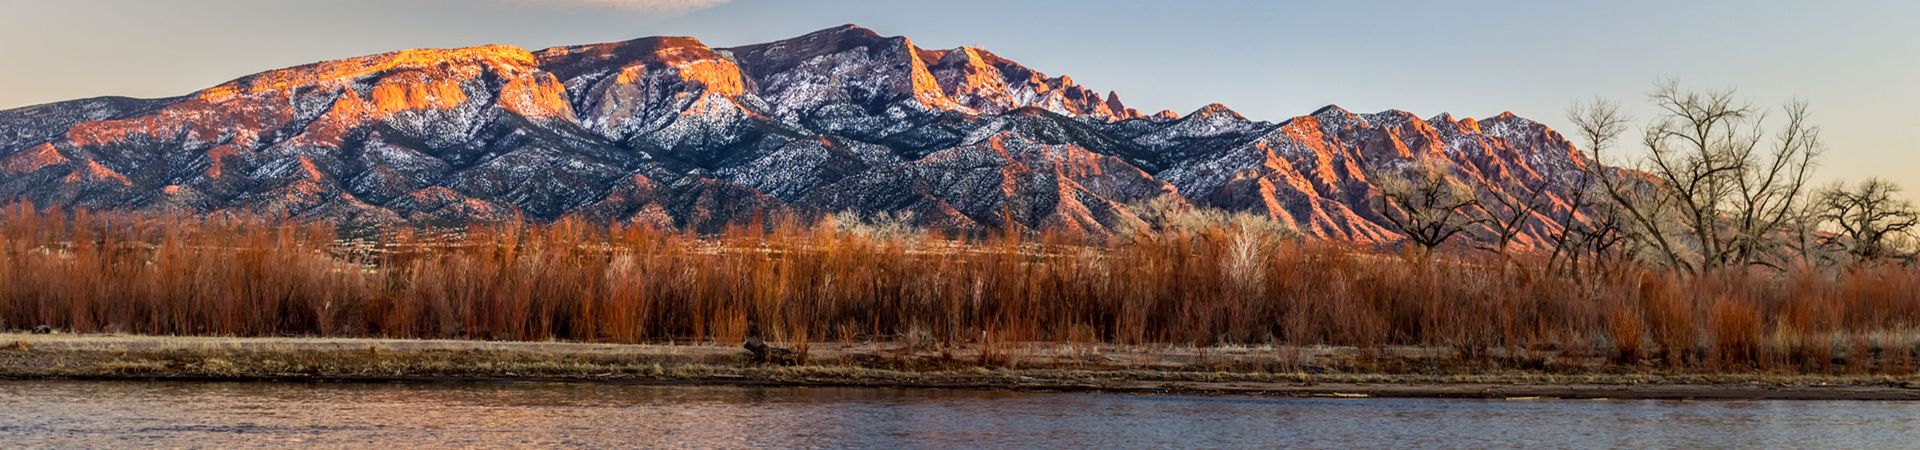 New Mexico Mountains and land near Rio Grande river